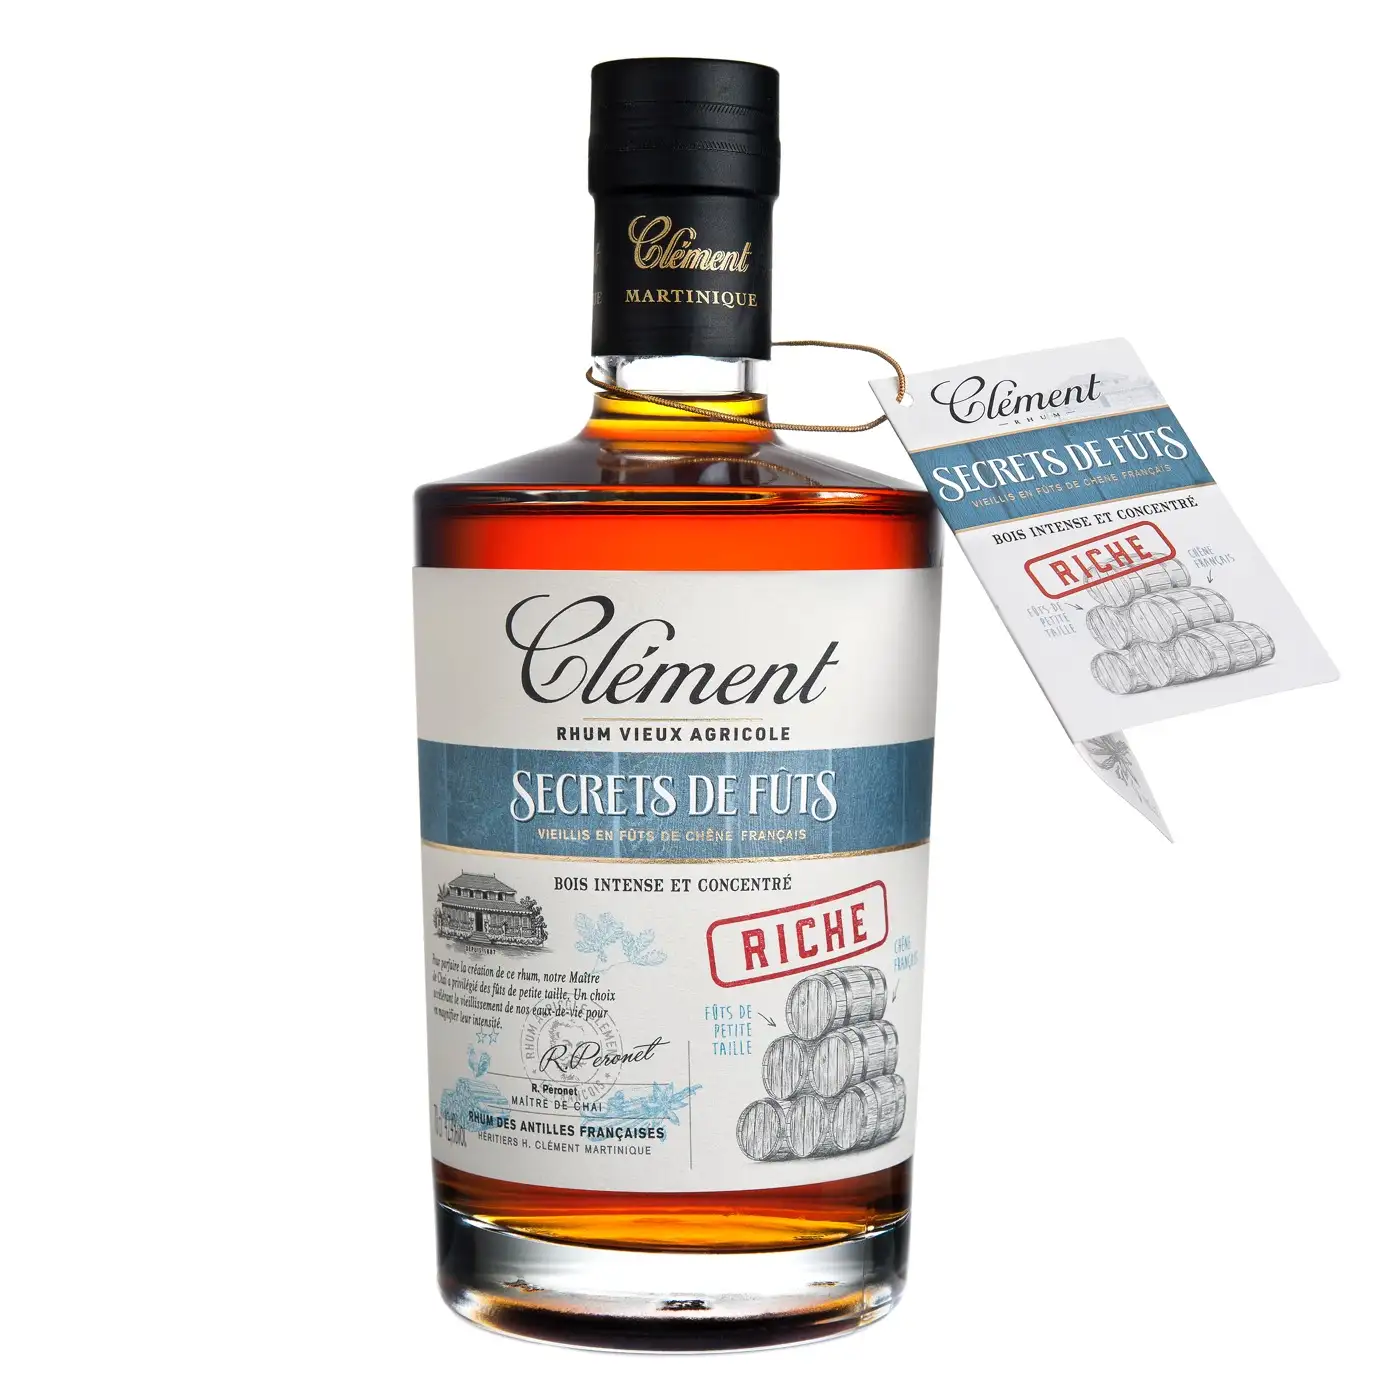 Image of the front of the bottle of the rum Clément Secrets de fûts (Riche)